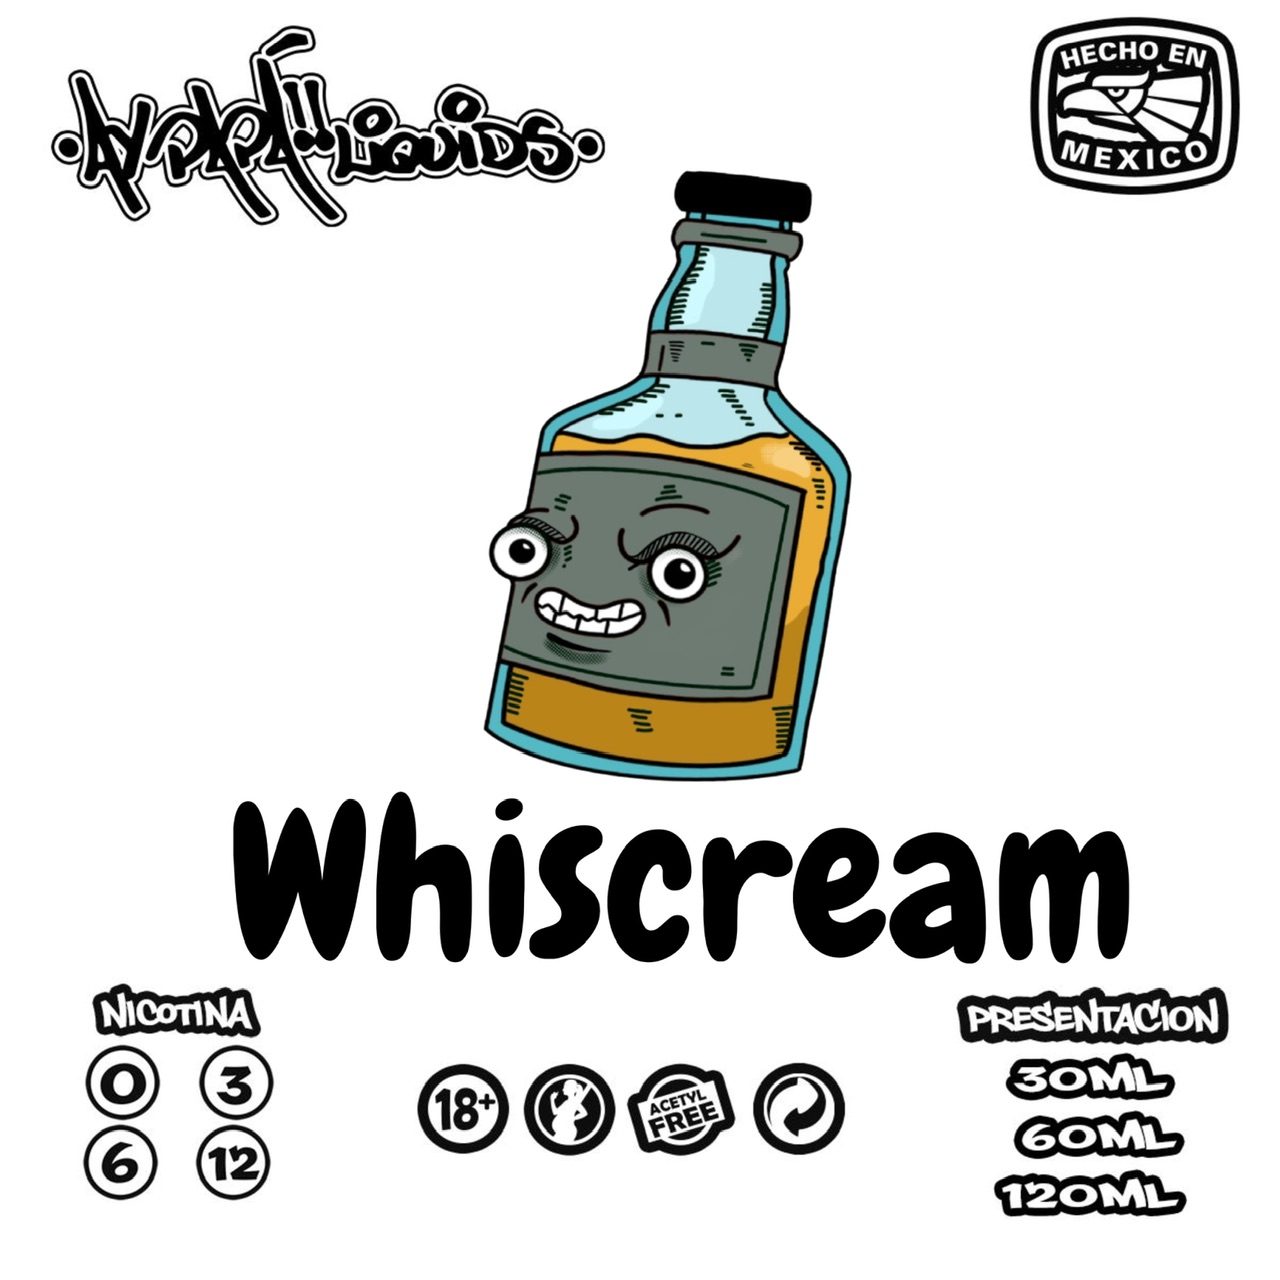 Whiscream